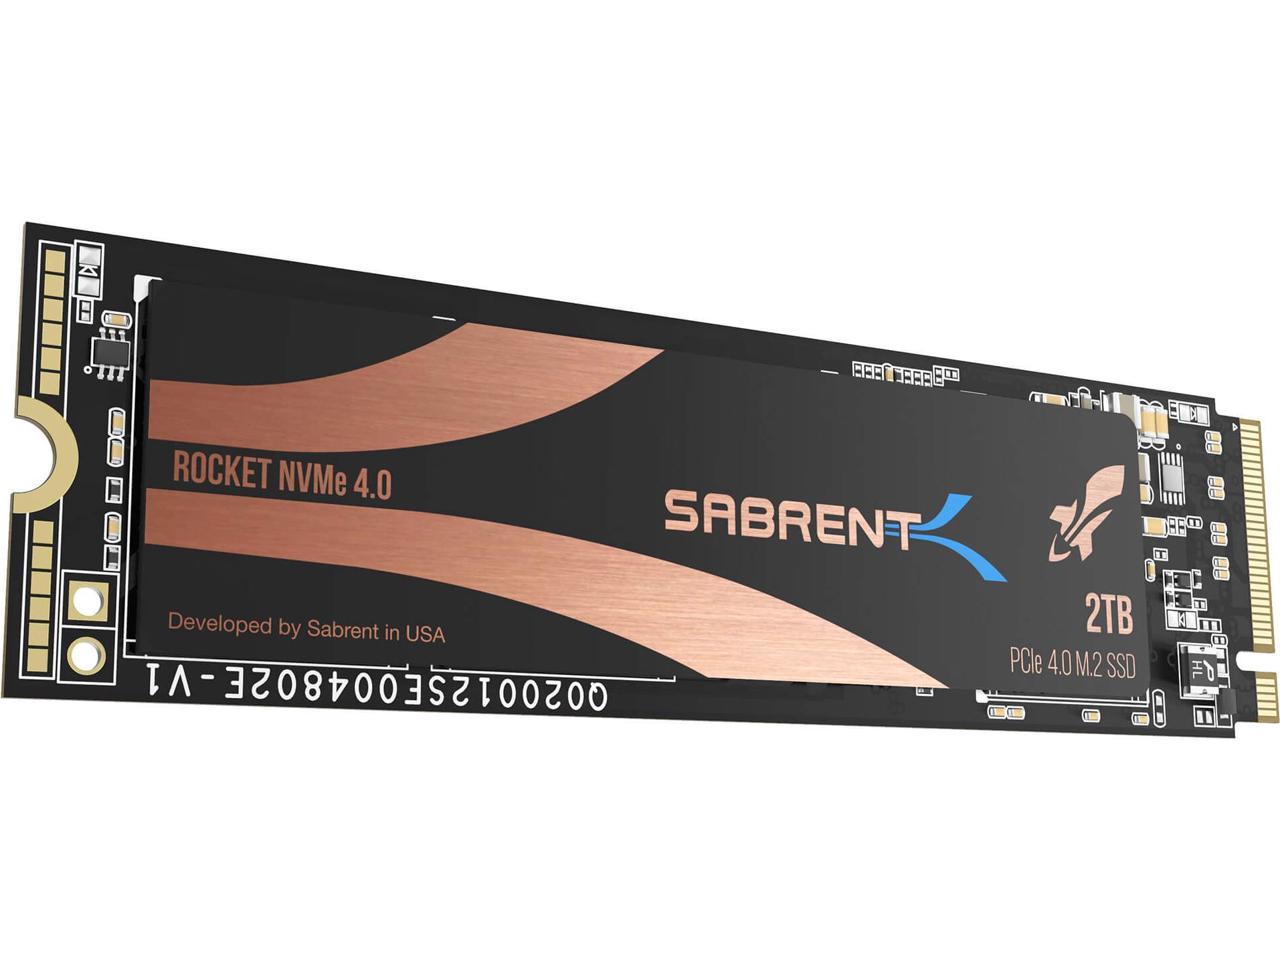 2TB SABRENT Rocket NVMe 4.0 Gen4 SSD $120 on Newegg via SabrentDirect